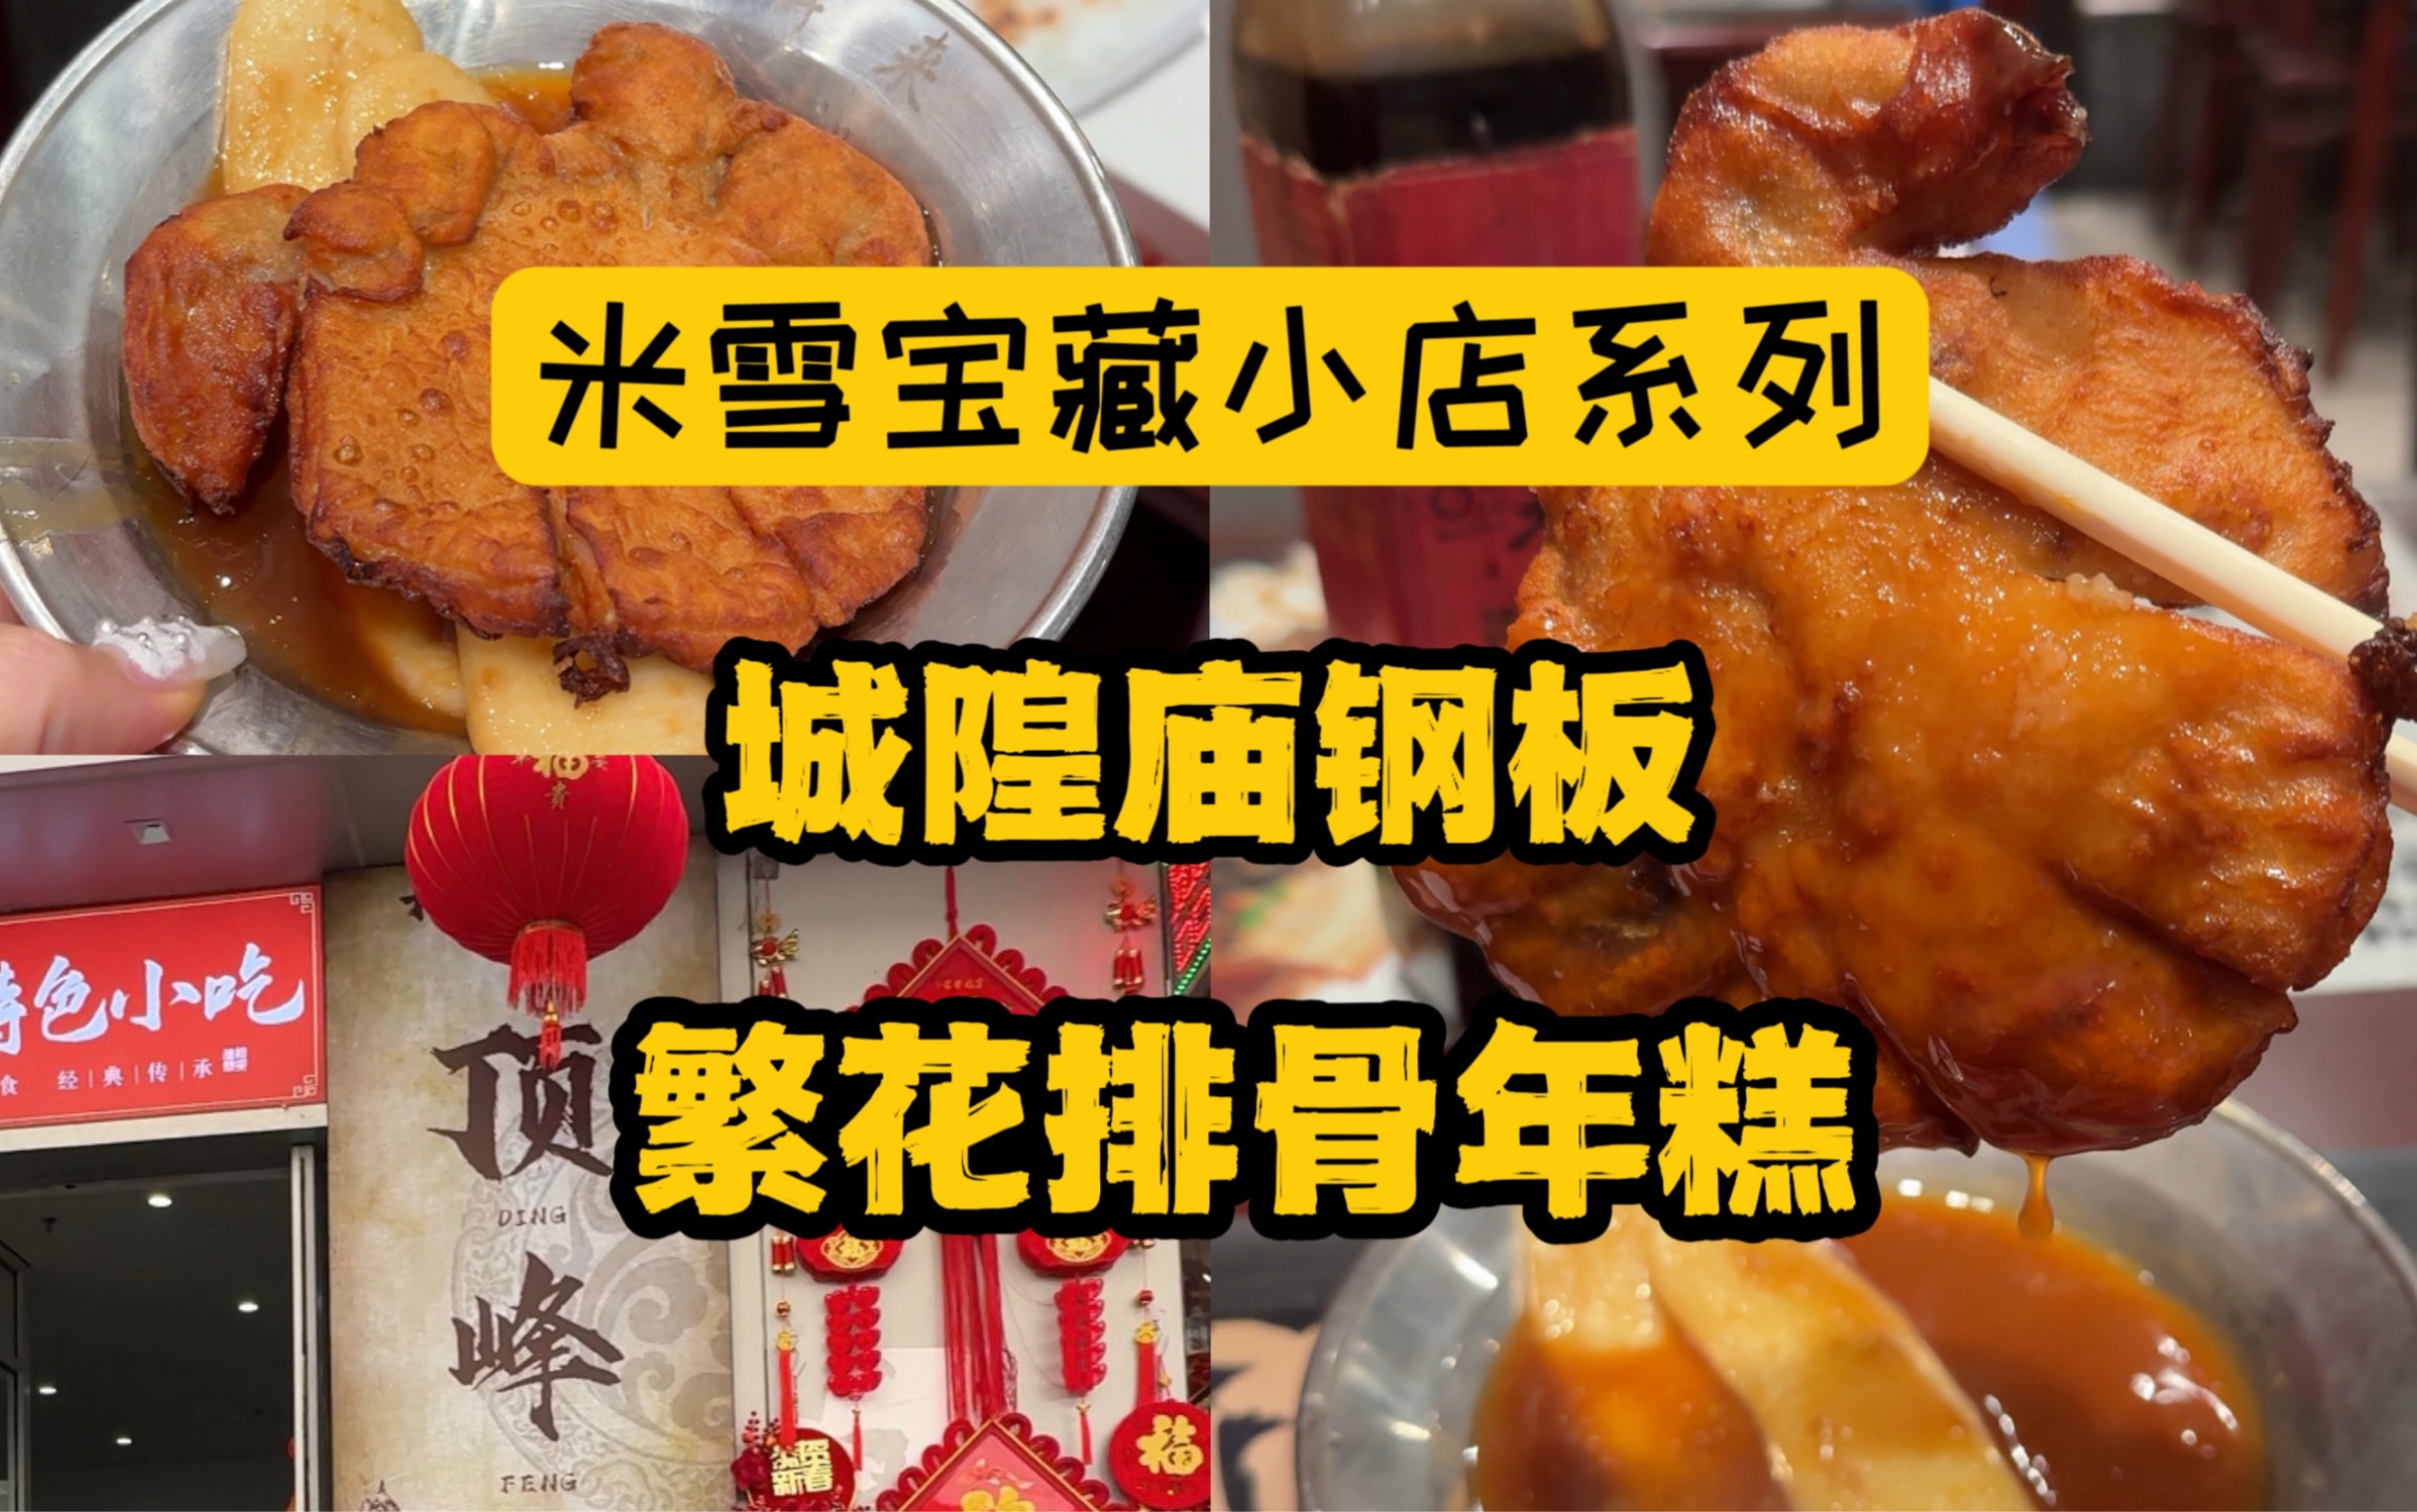 上海买不到的大闸蟹，在蟹农家的一顿农家菜。-米雪食记-米雪食记-哔哩哔哩视频